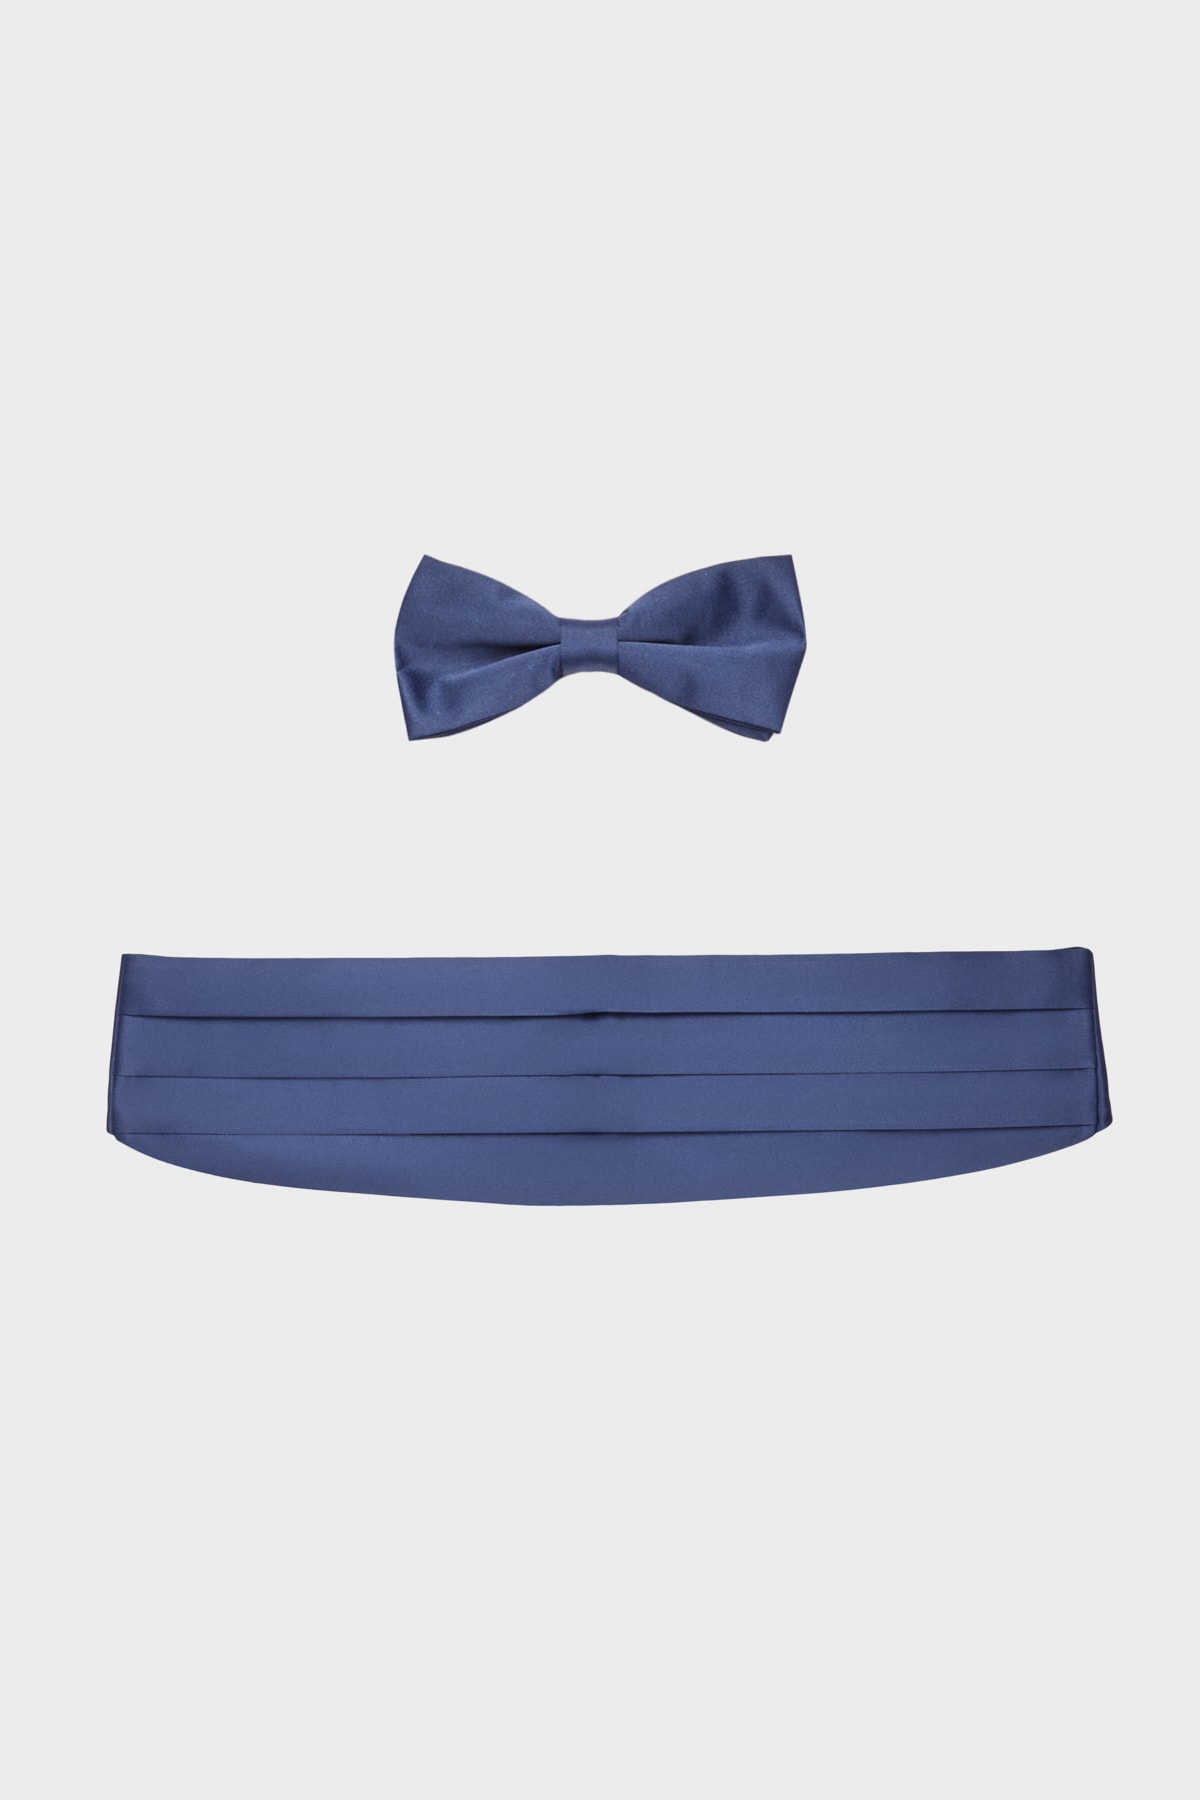 Levně ALTINYILDIZ CLASSICS Men's Navy Blue Bowtie-Sash Set